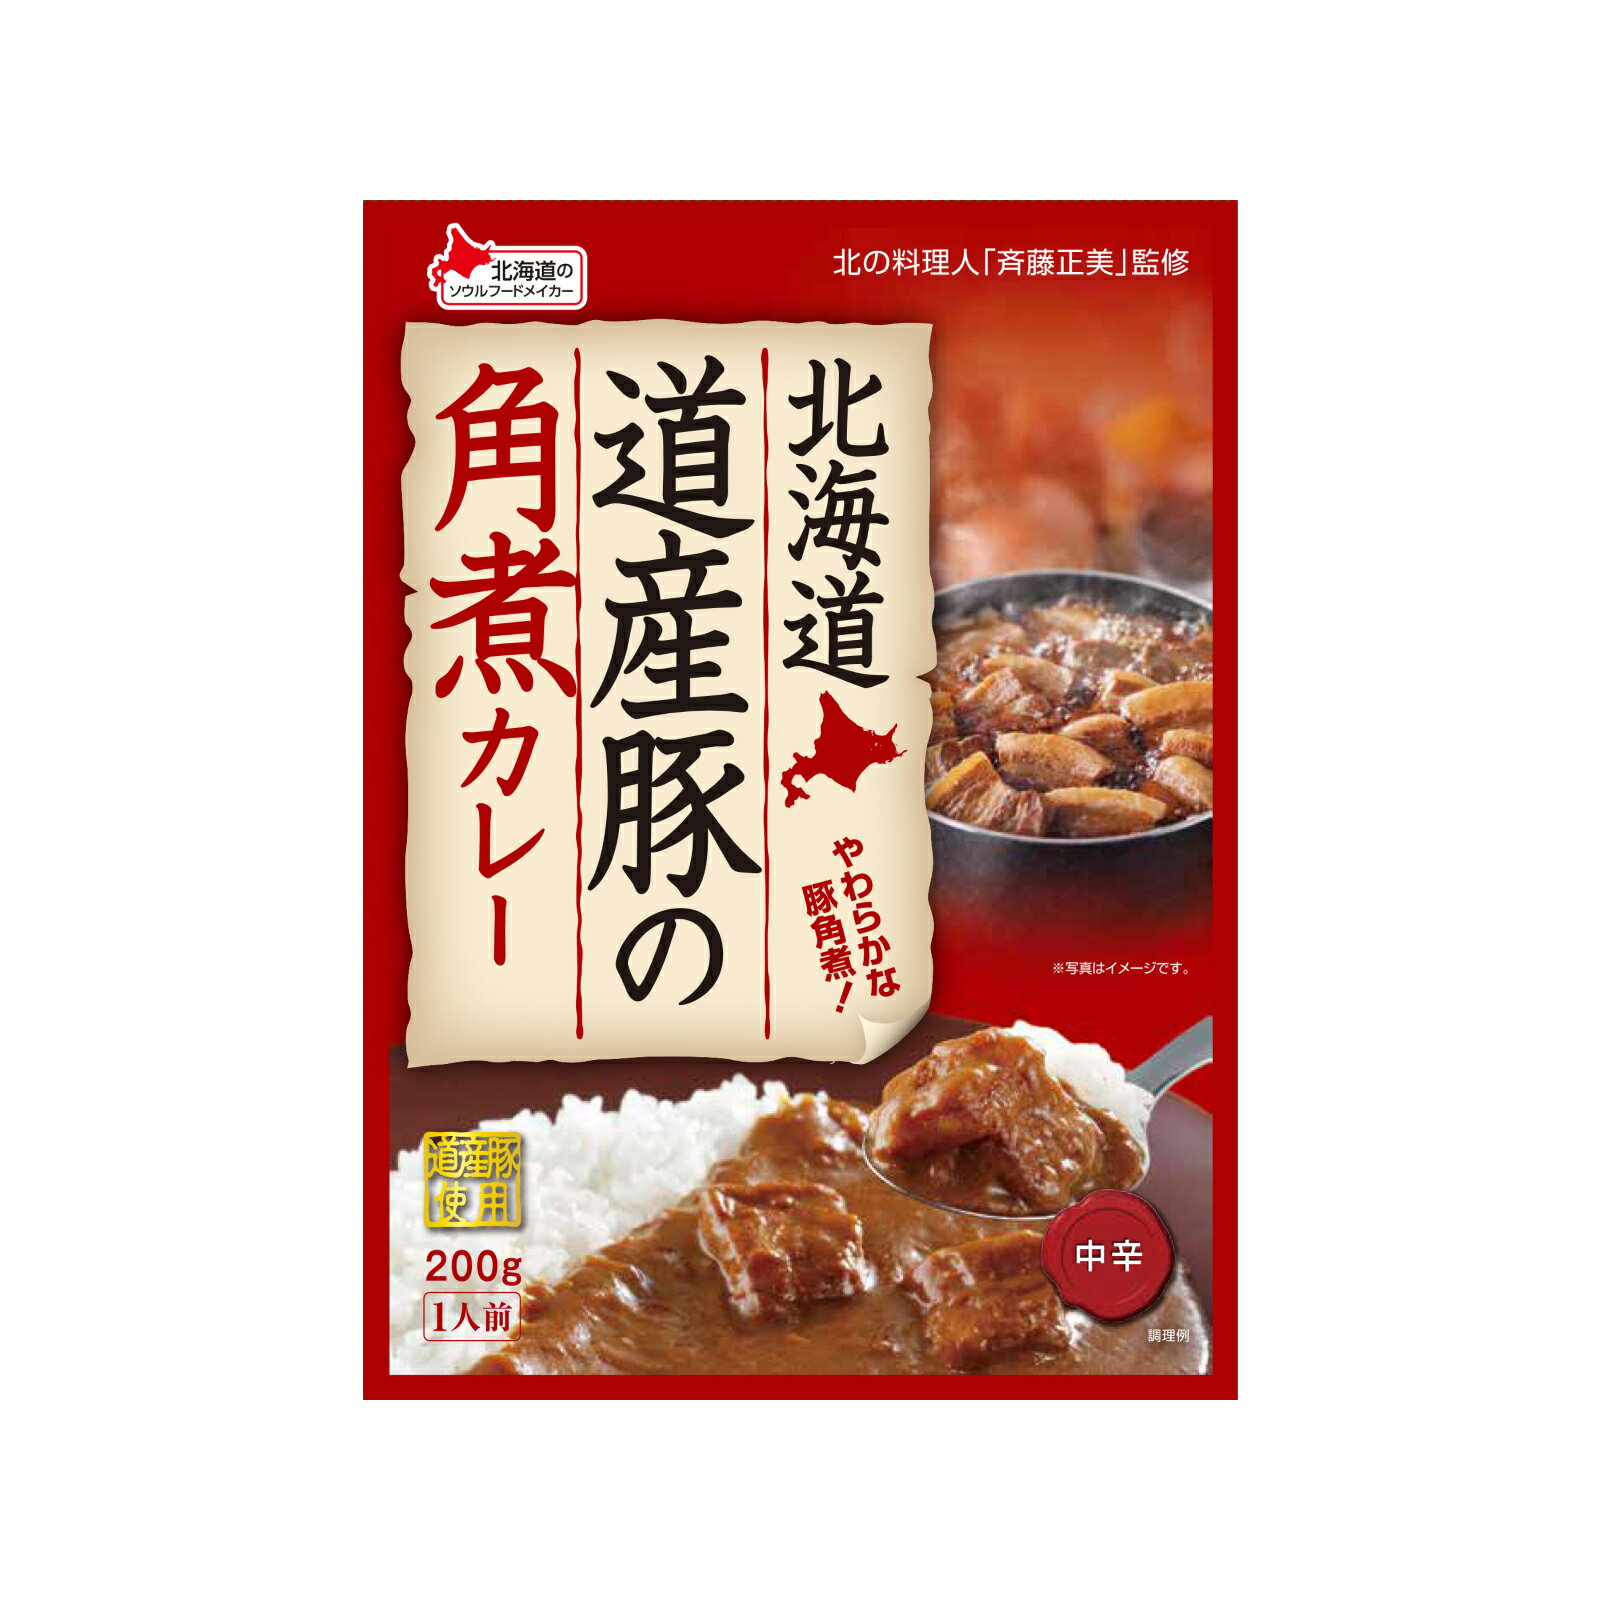 ベル食品 北海道 道産豚の角煮カレー 200g 【 ベル カレー レトルト 】